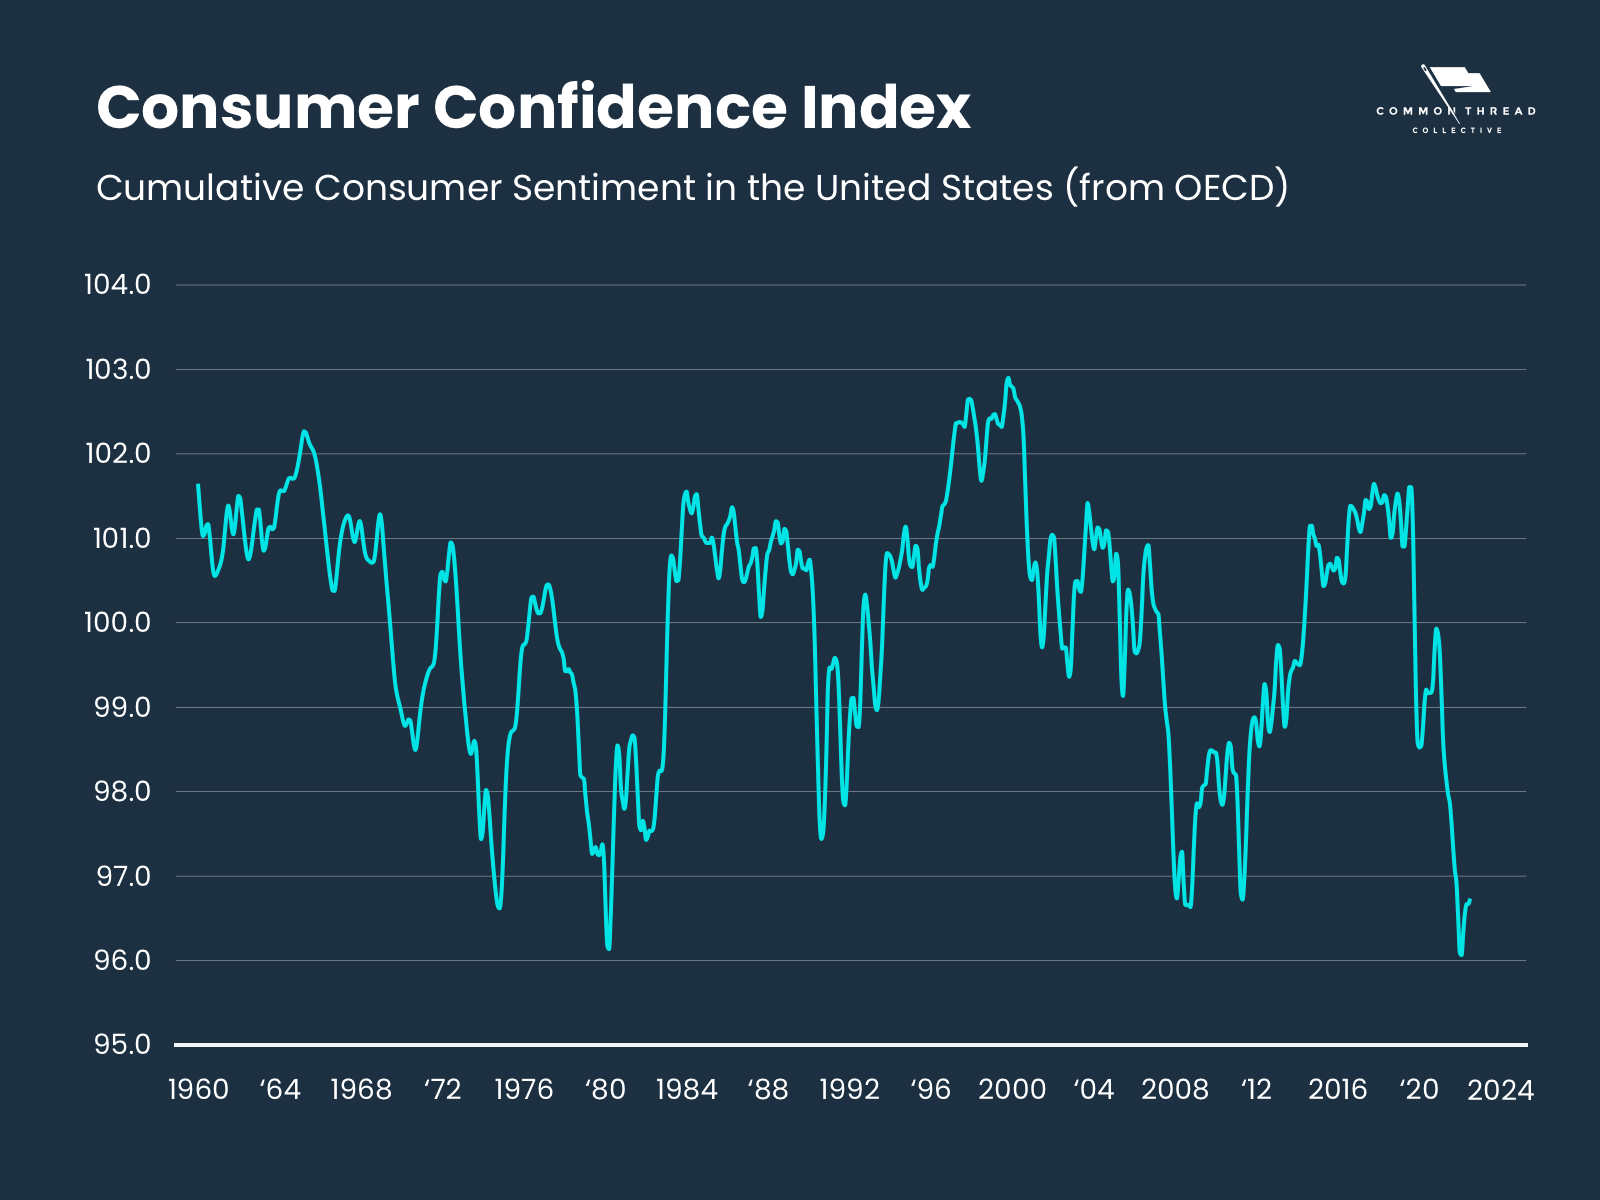 consumer confidence index